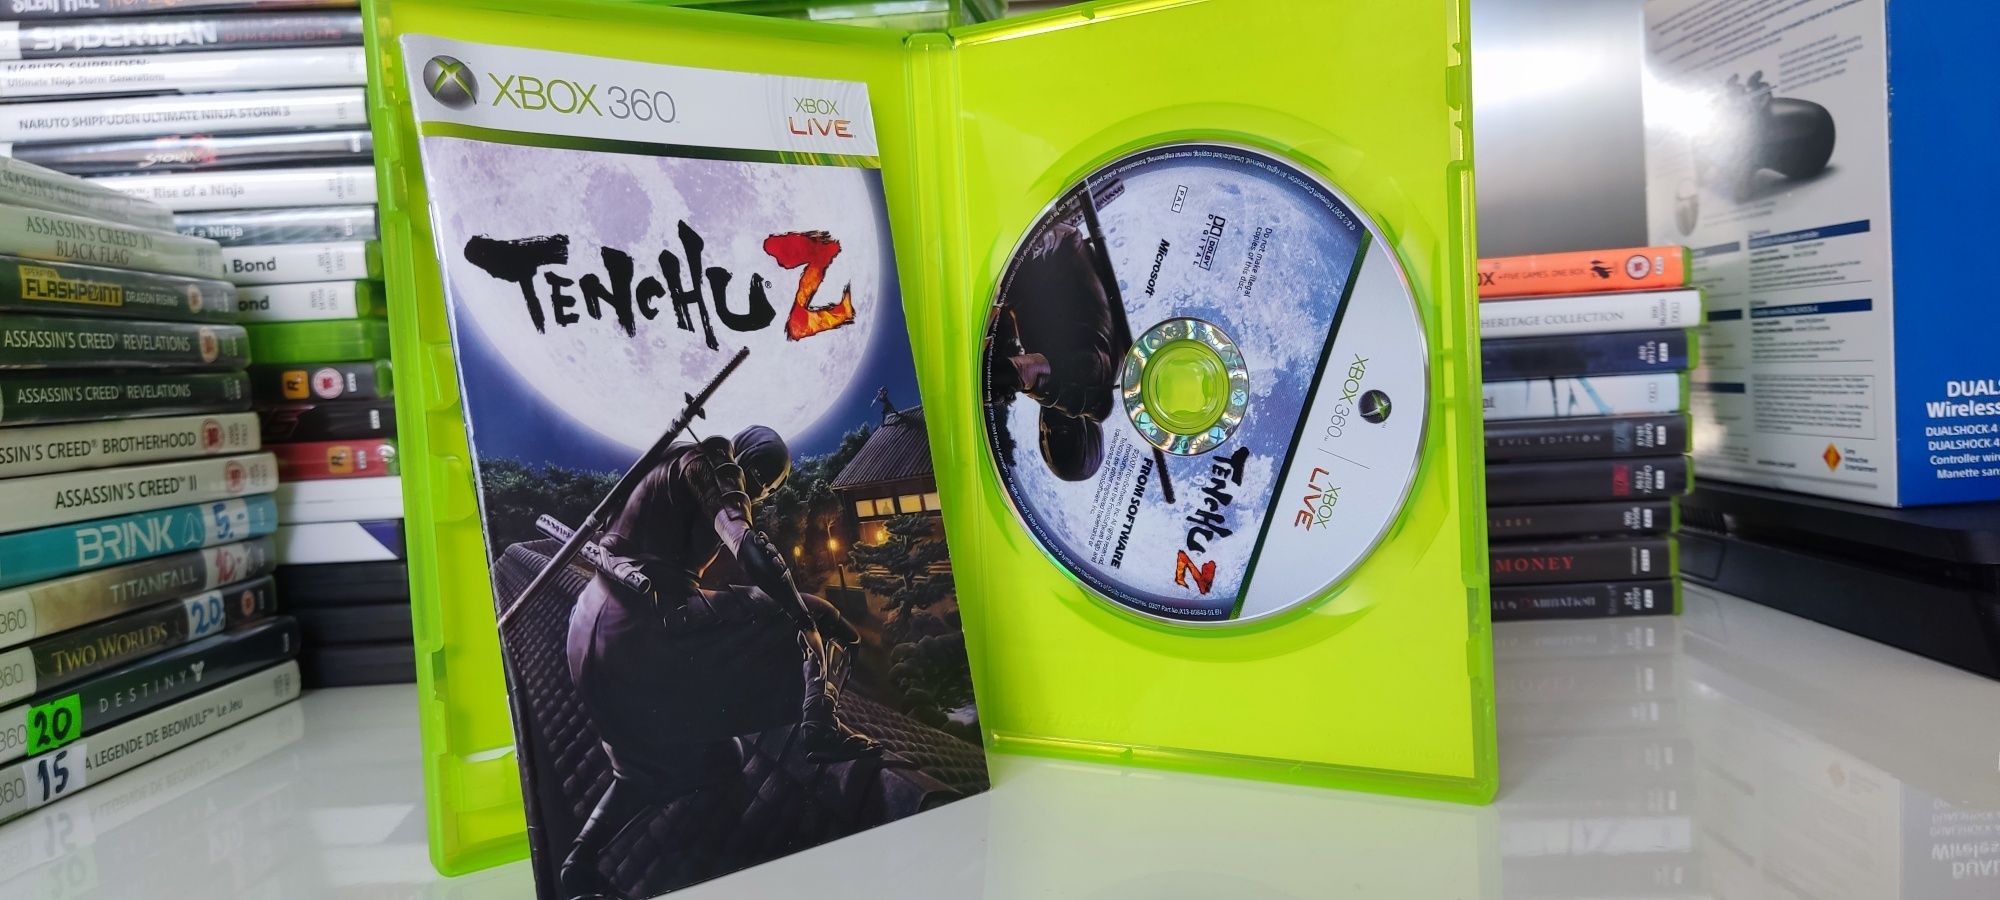 Tenchu Z Okładka PL Xbox 360